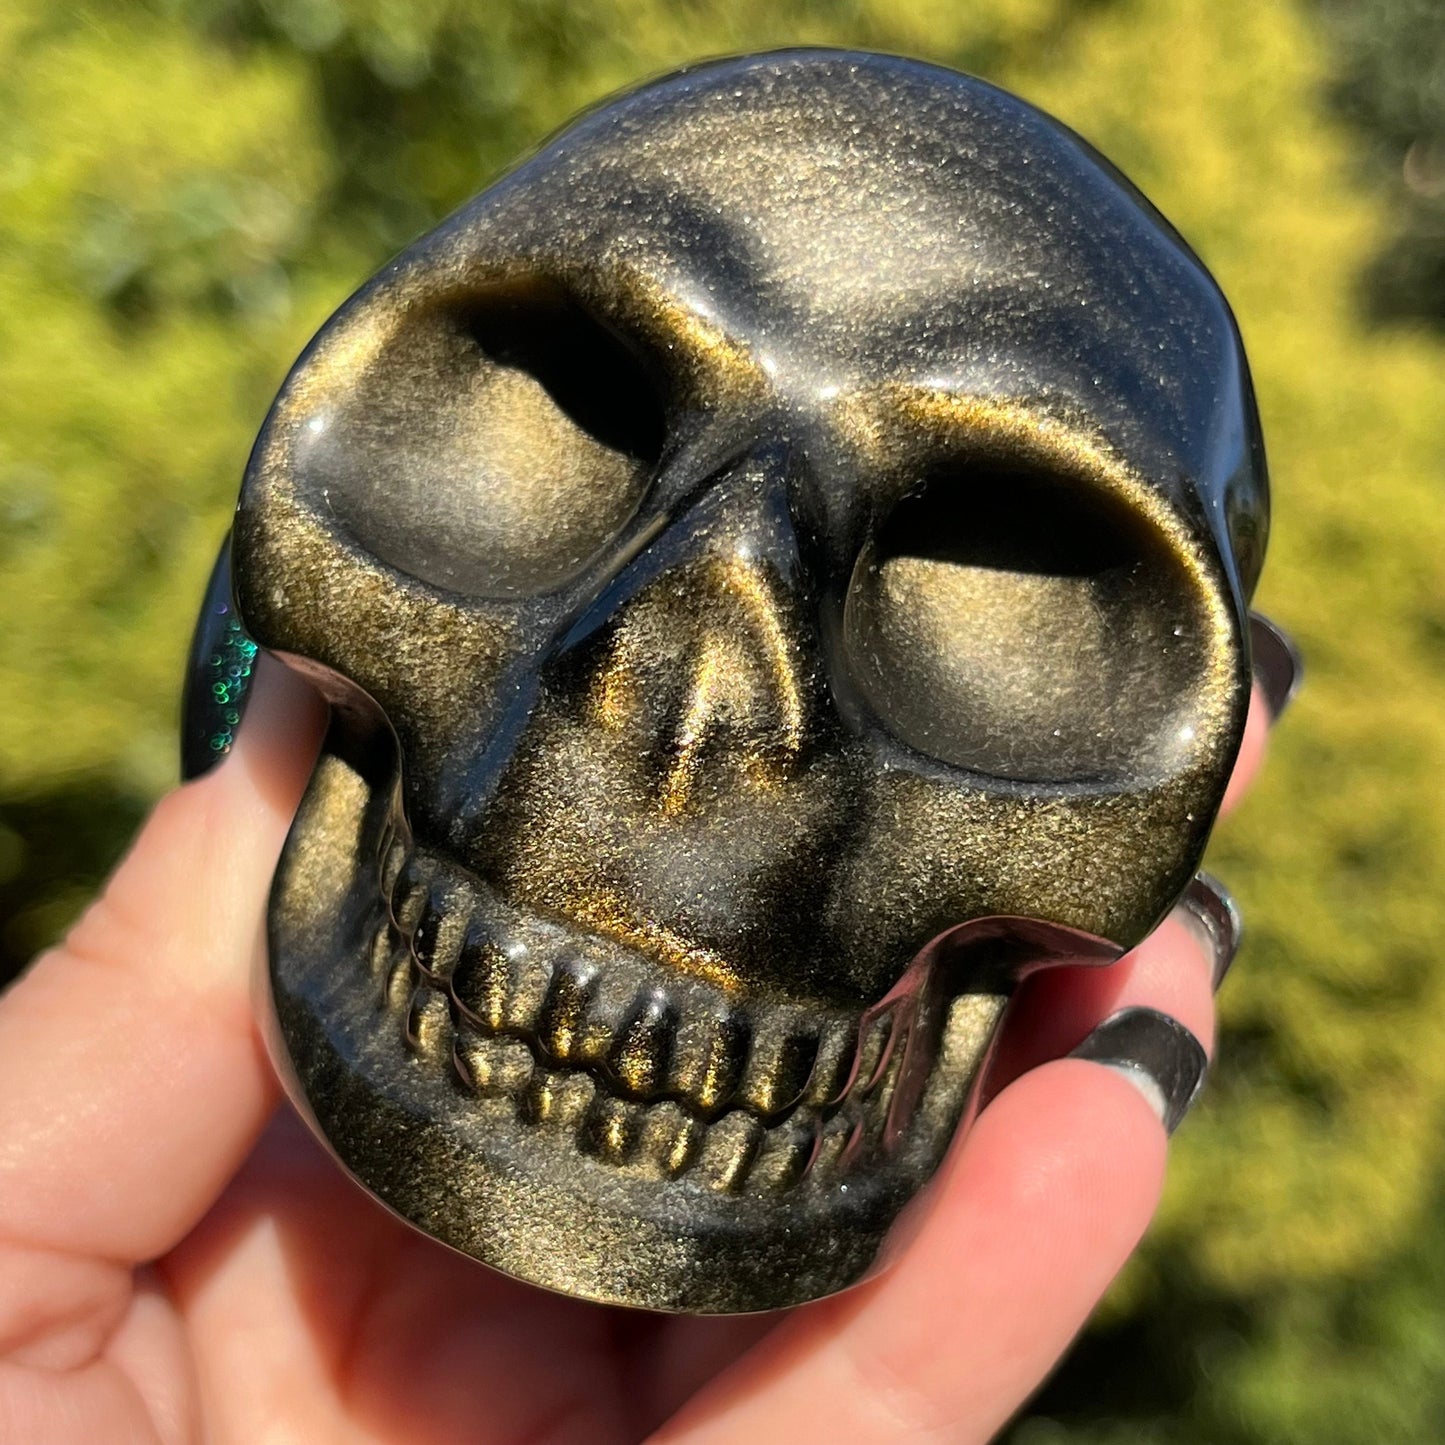 Gold Sheen Obsidian Skull | Obsidian Crystal Skull | Crystal Human Skull | Art Skull Carving